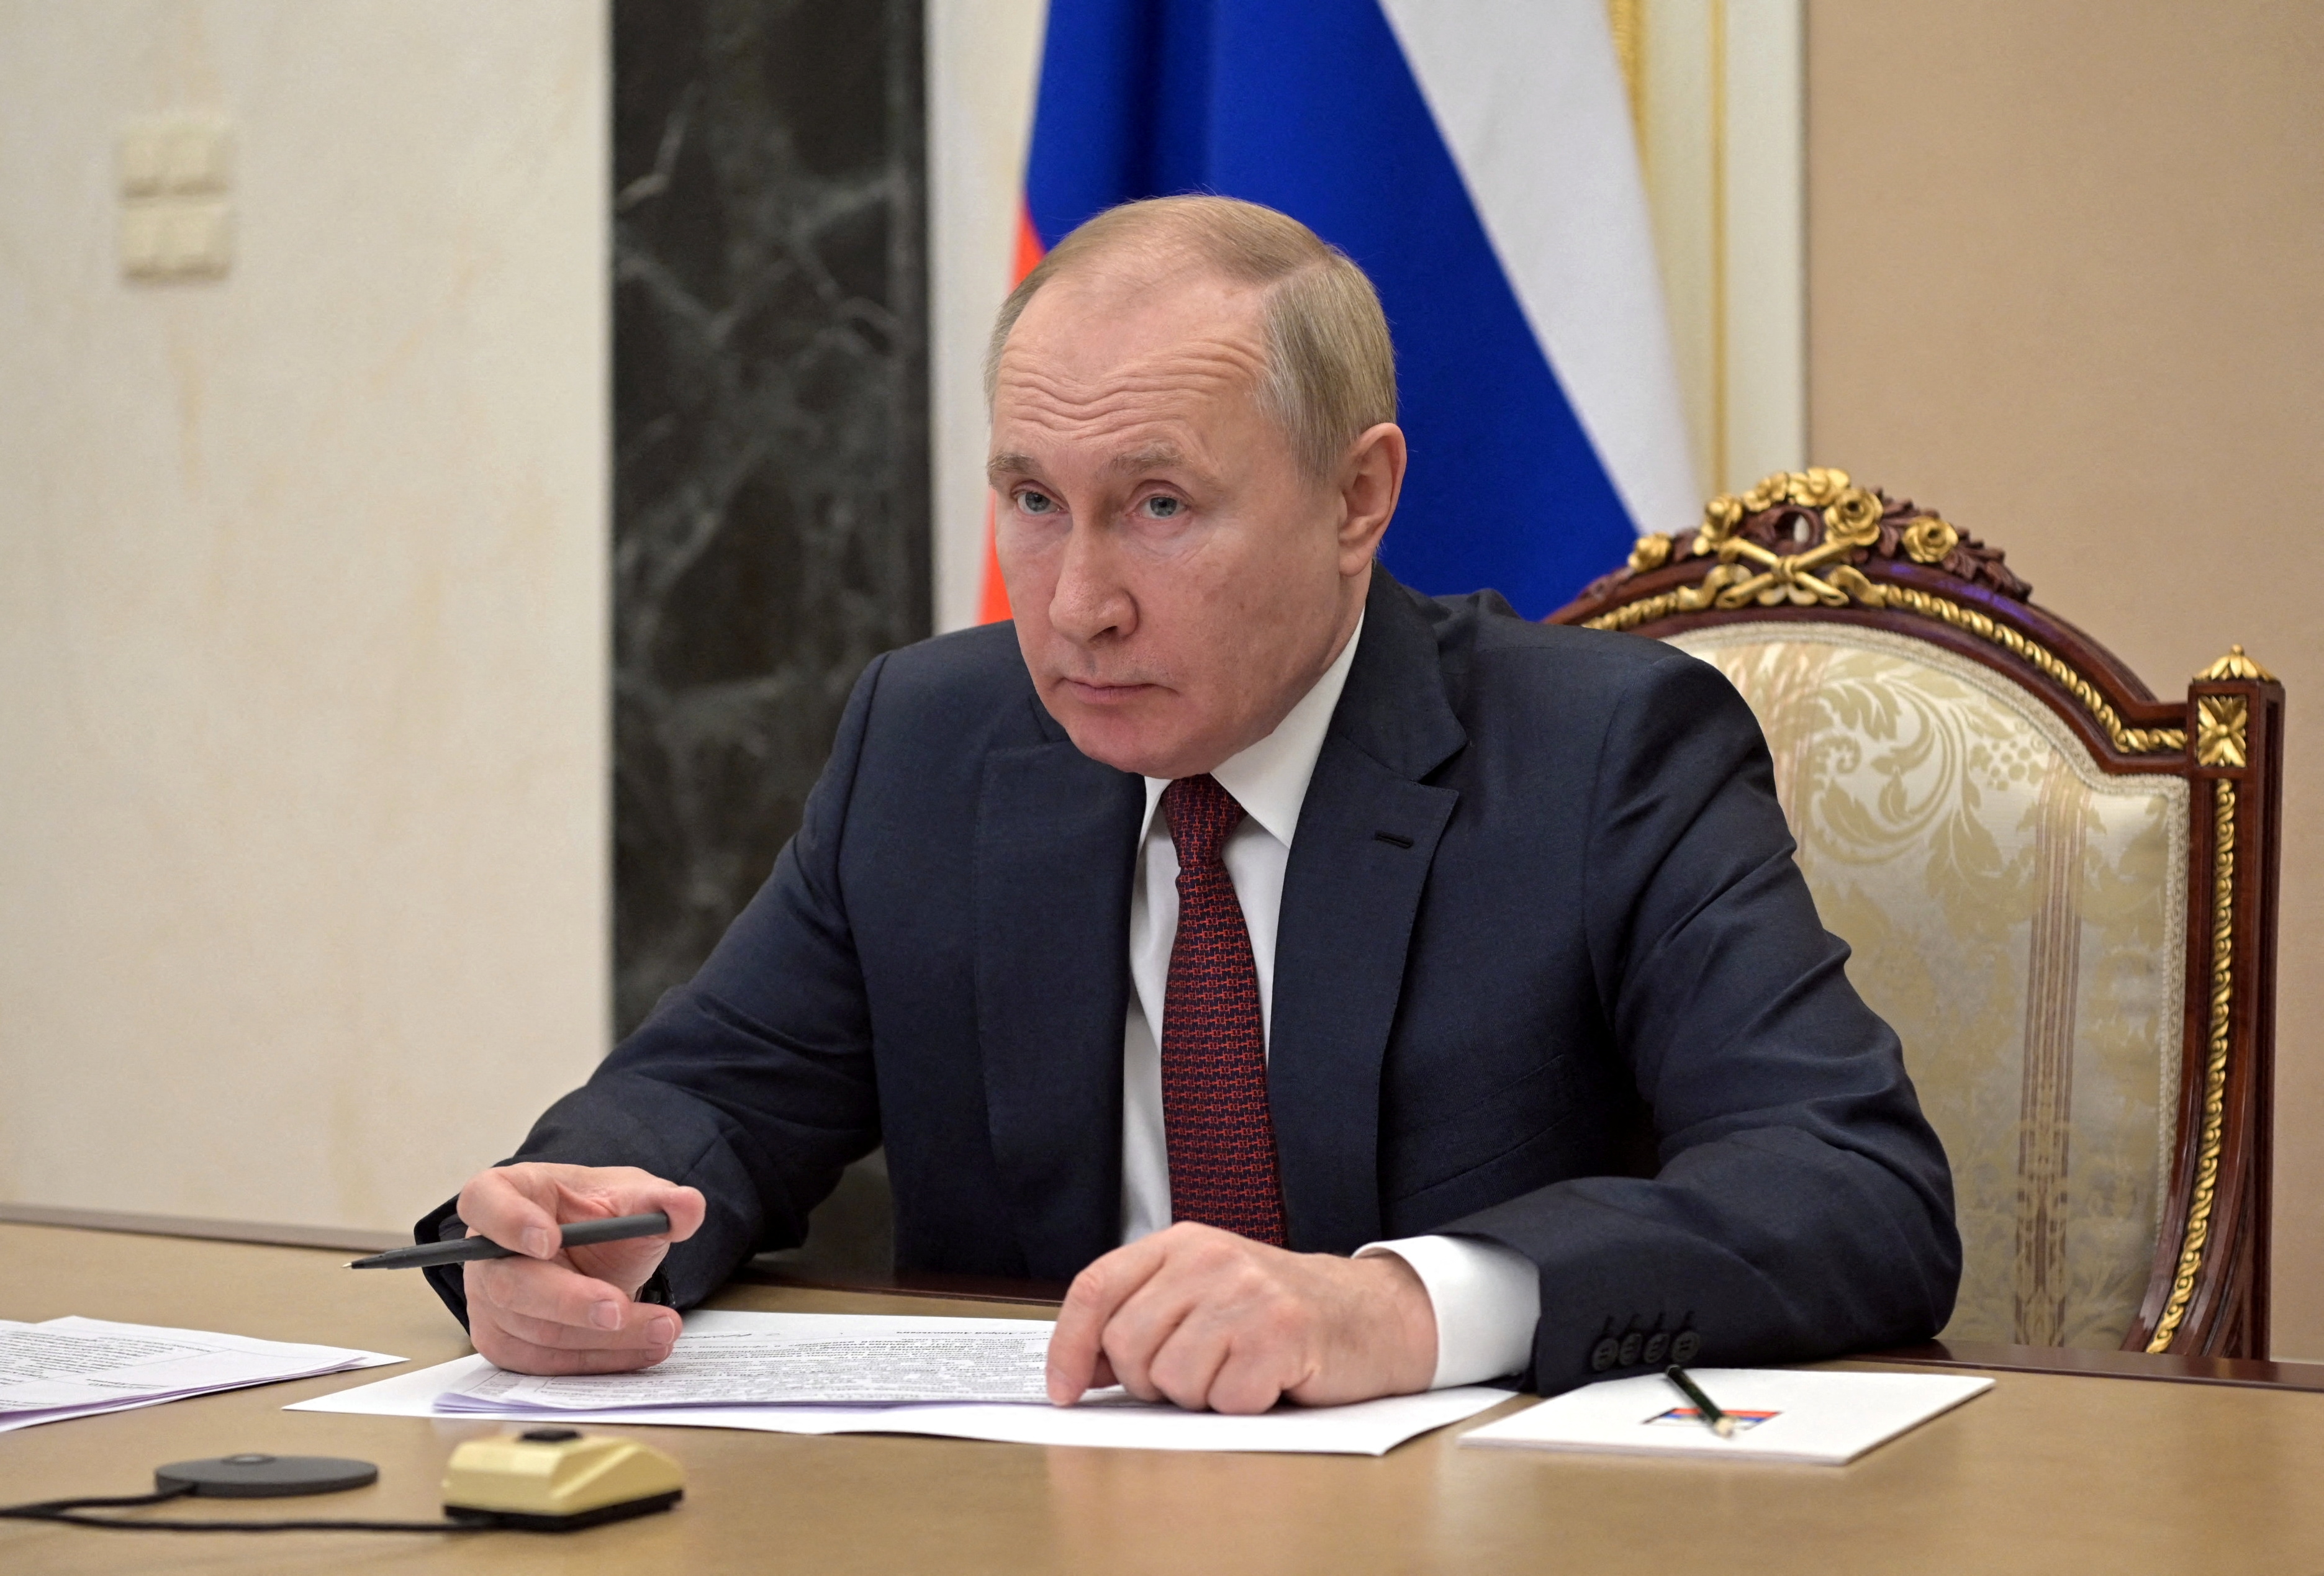 الرئيس الروسي فلاديمير بوتين يحضر اجتماعا مع أعضاء الحكومة عبر رابط فيديو في موسكو ، روسيا ، 12 يناير 2022. سبوتنيك / أليكسي نيكولسكي / الكرملين عبر رويترز